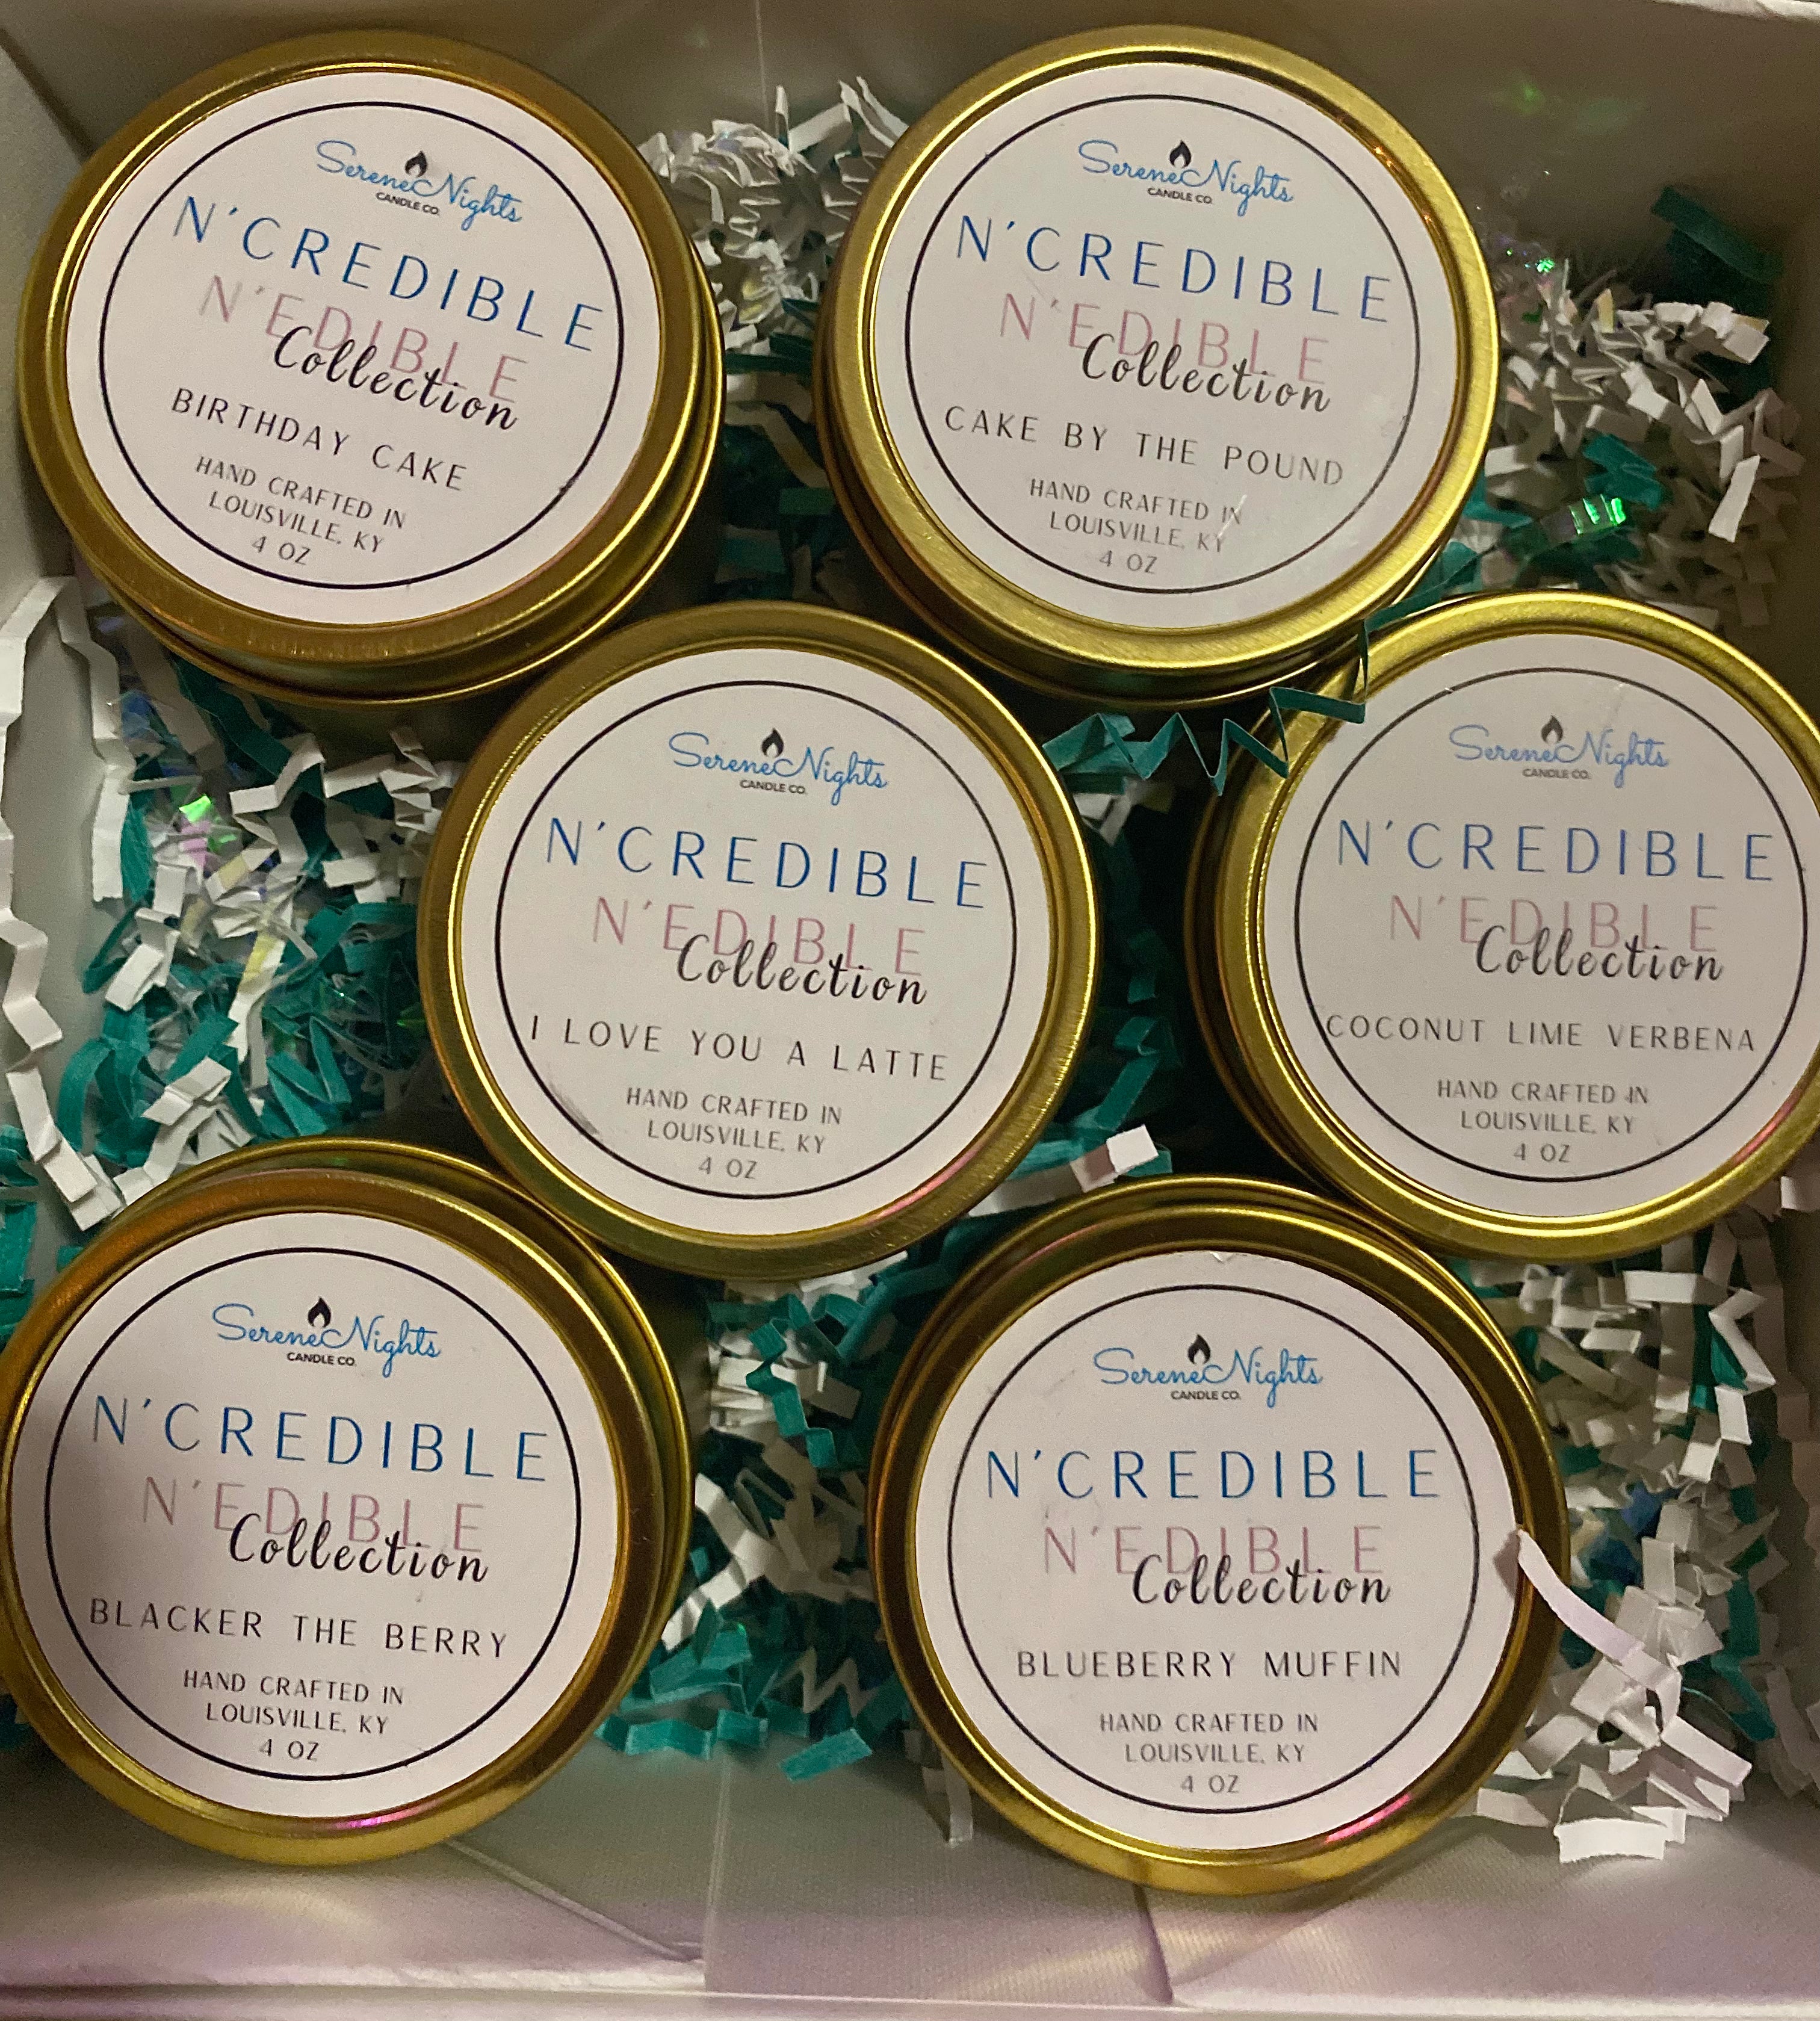 N'credible N'edible Gift Collection